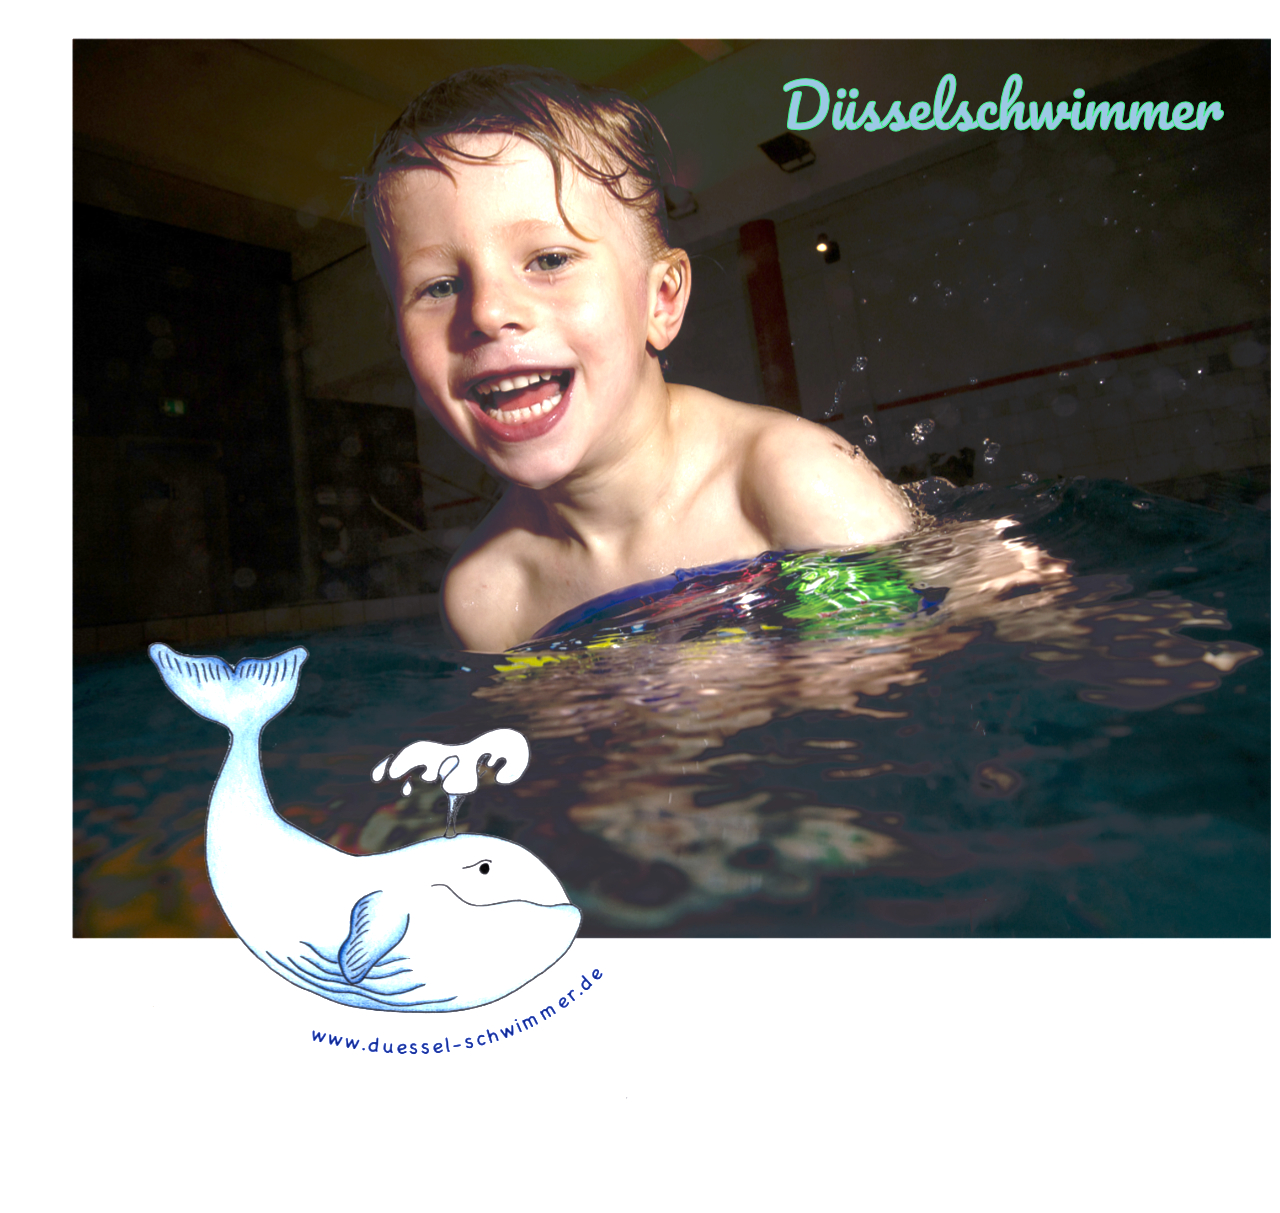 Düsselschwimmer